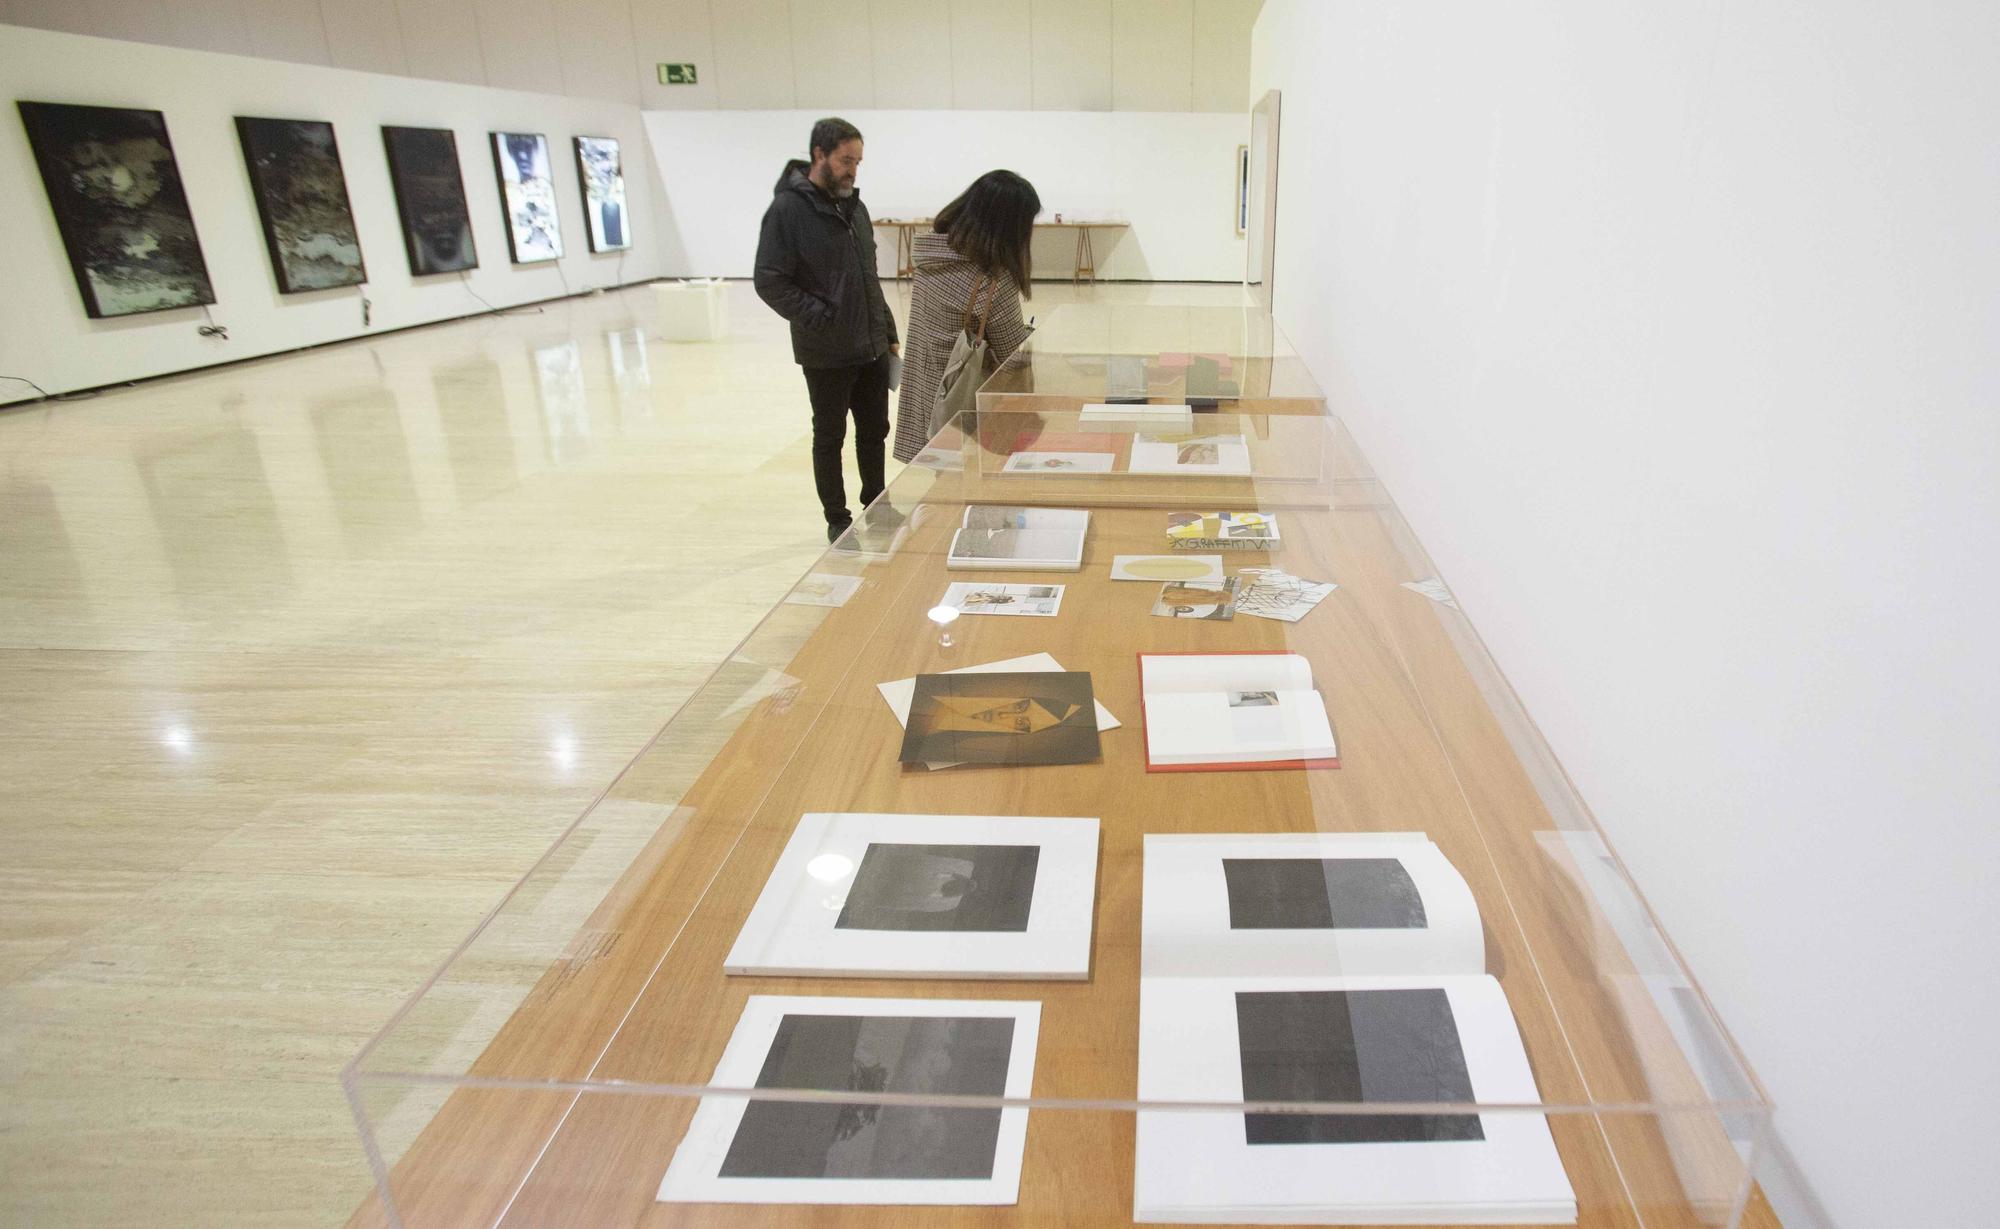 Exposición "Salto de página" de la Colección de Arte Banco Sabadell en el MUA